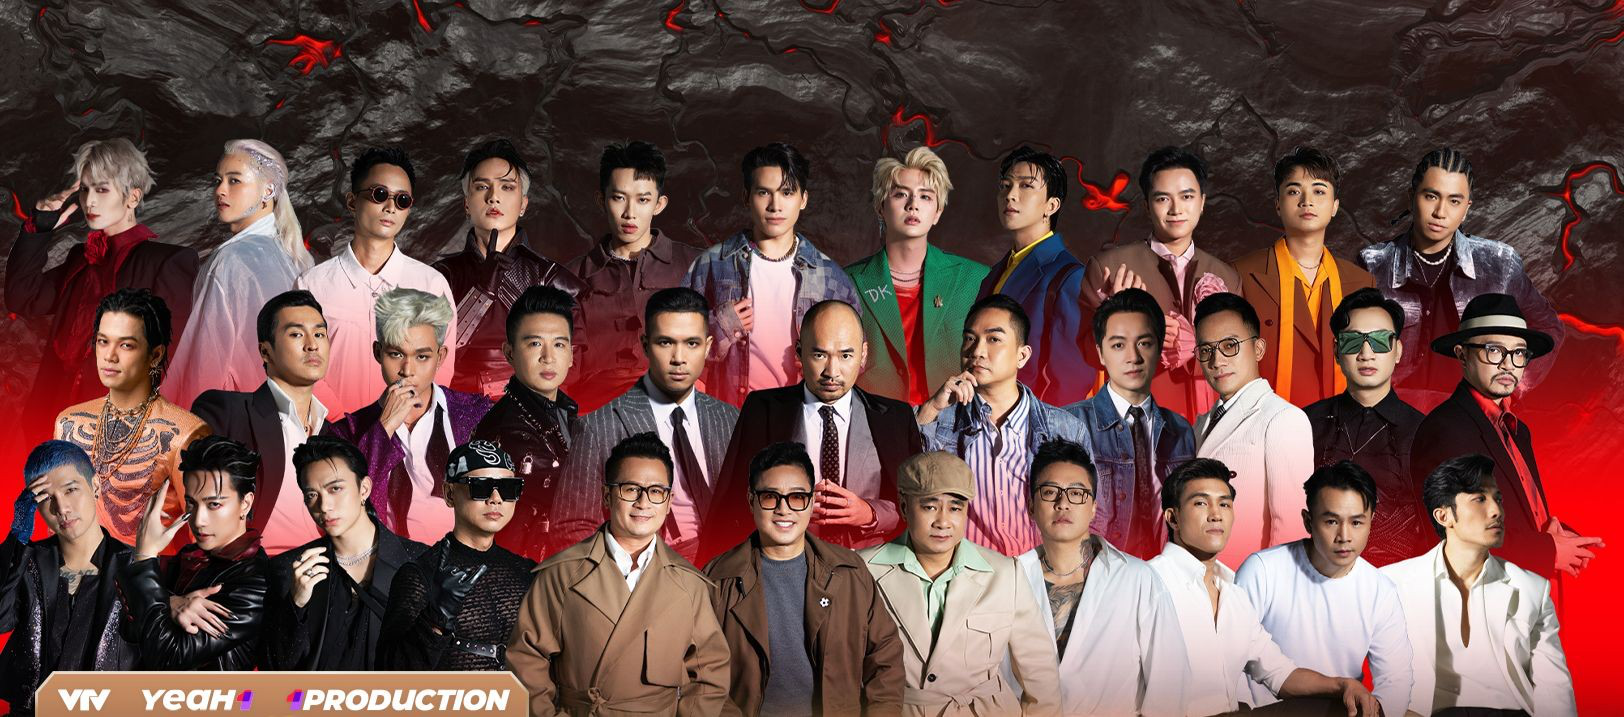 Gần 70 đàn ông showbiz Việt đổ xô lên sóng truyền hình trong một buổi tối- Ảnh 2.